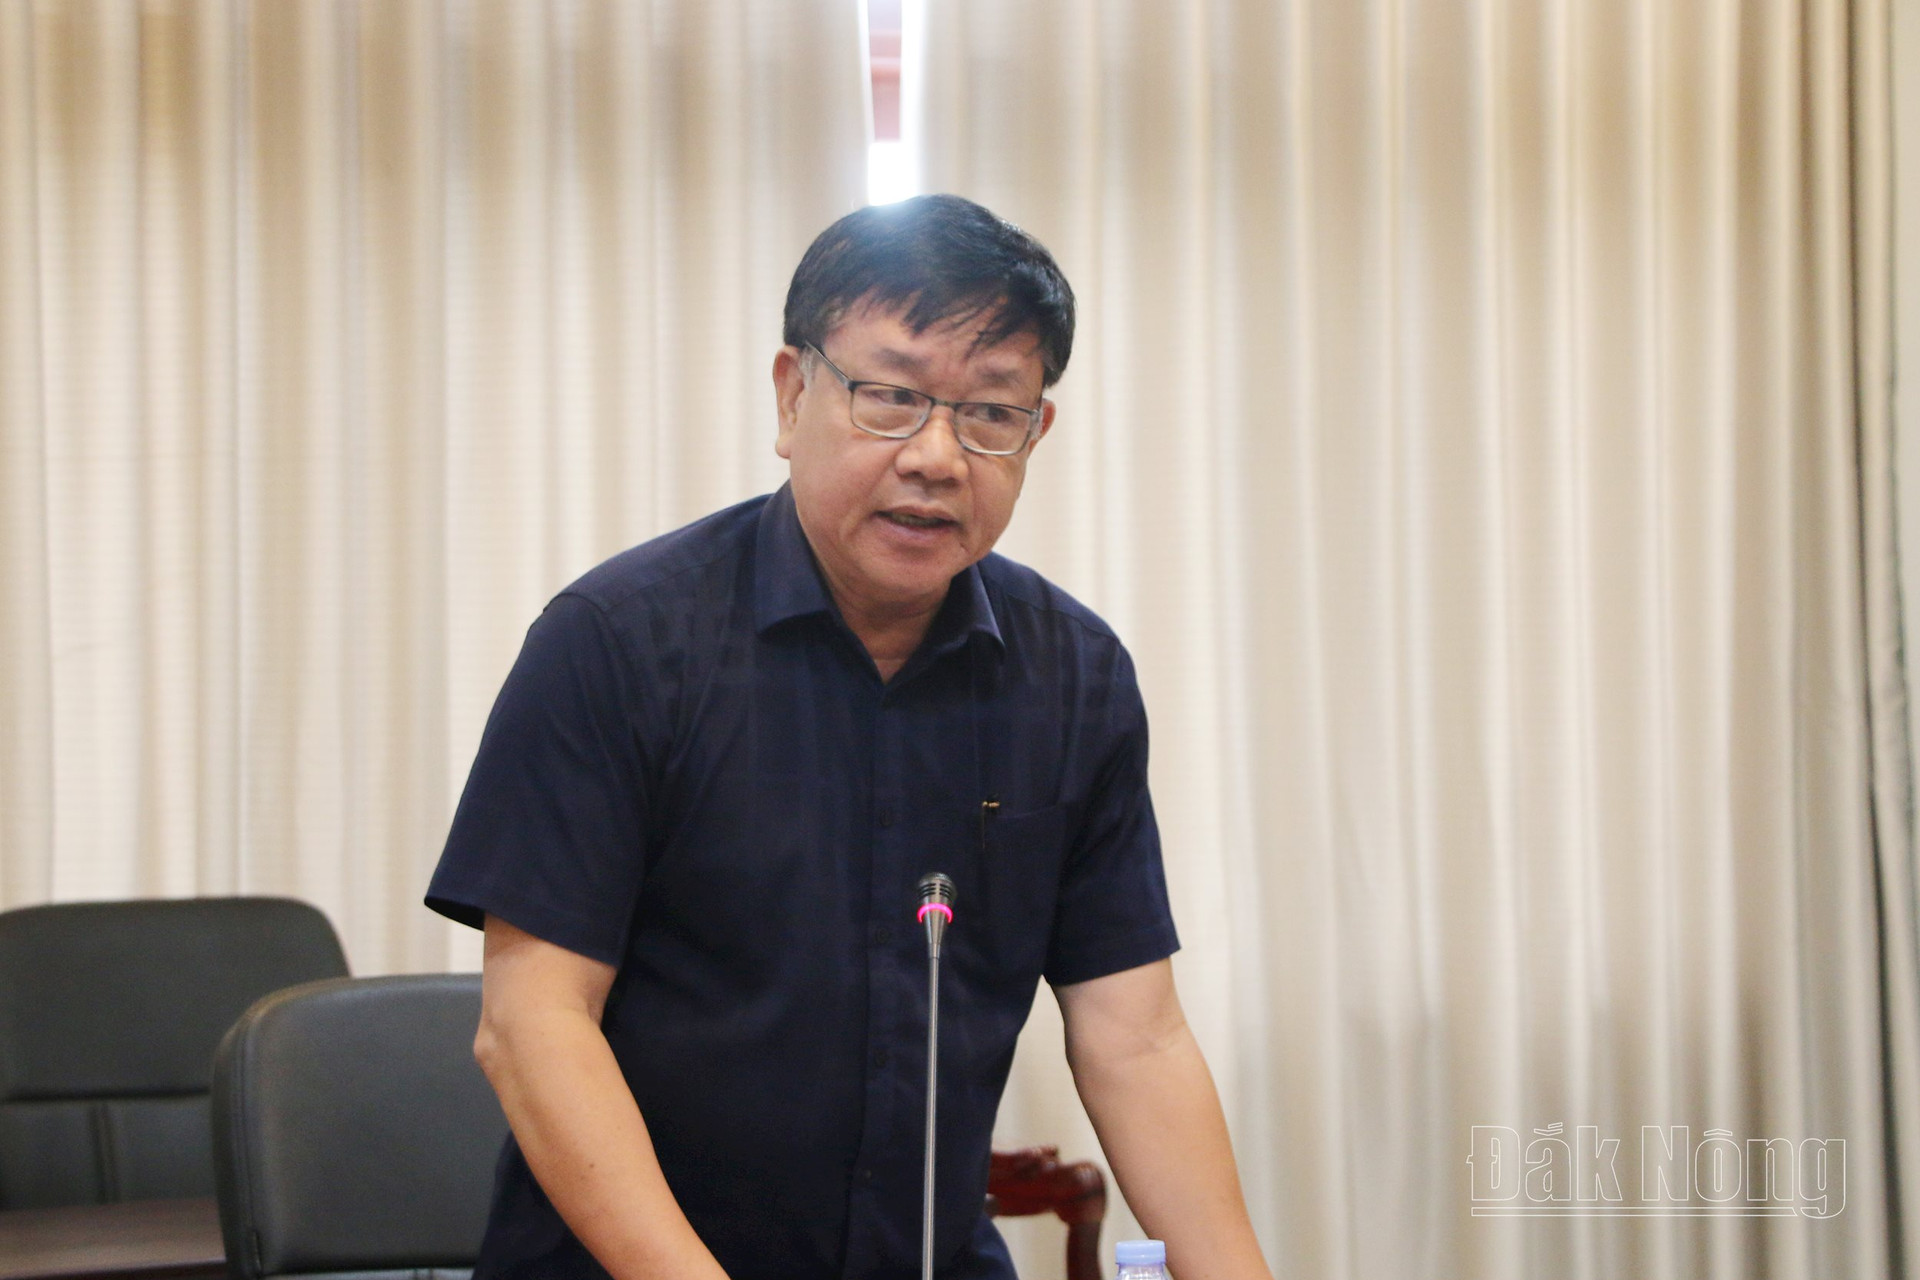 Thảo luận tại tổ 2, đồng chí Trần Xuân Hải, Ủy viên BTV Tỉnh ủy, Trưởng Ban Nội chính Tỉnh ủy cho biết, thu ngân sách của tỉnh Đắk Nông thấp nhất trong tỉnh Tây Nguyên, thấp hơn tỉnh đứng thứ 4 là Kon Tum khoảng 300 tỷ.